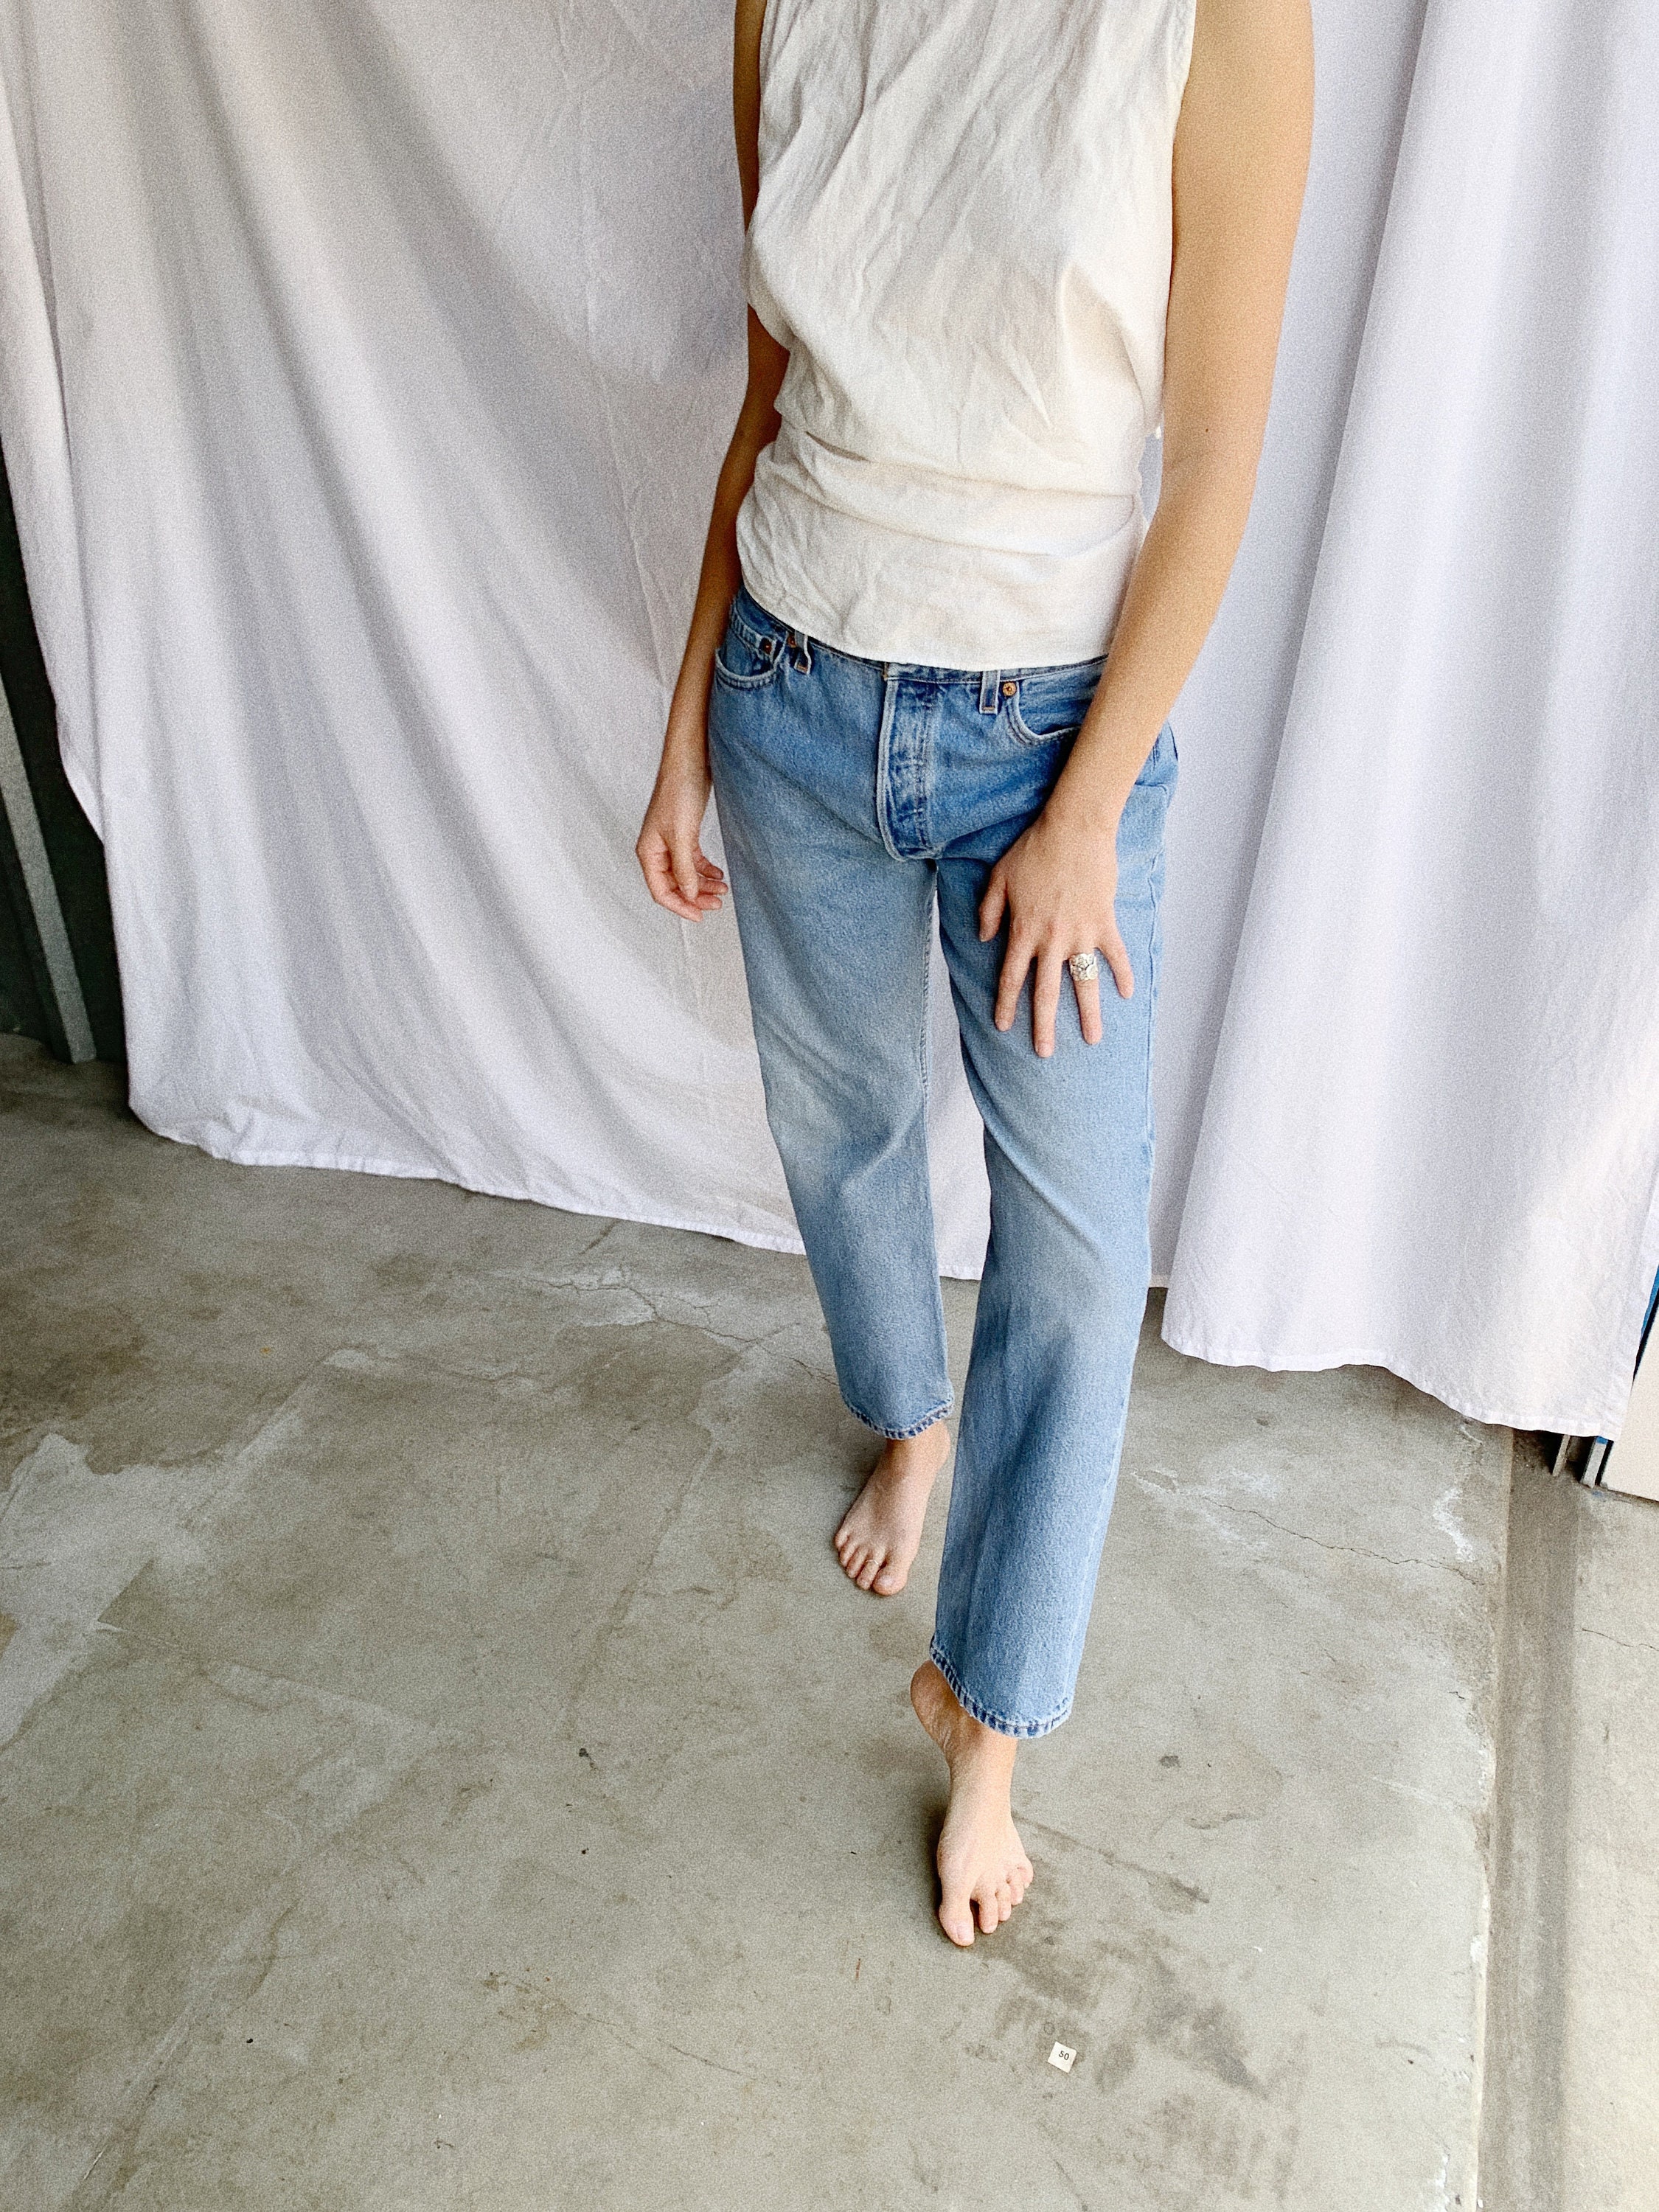 Levi's 501 jeans - size 31